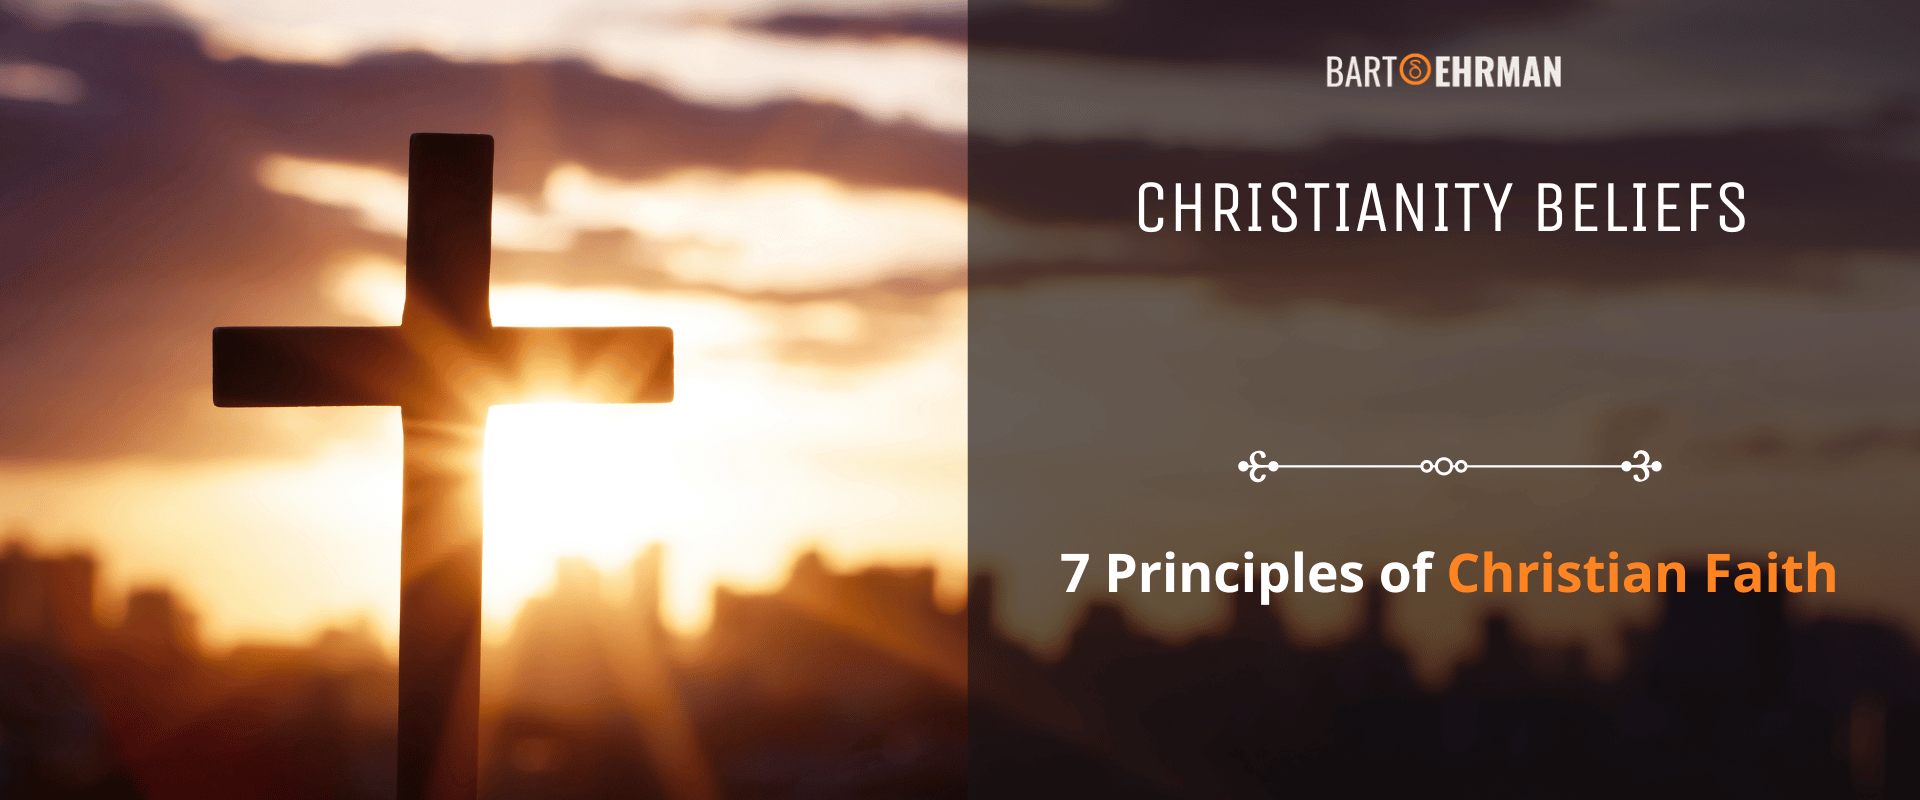 Christianity Beliefs Principles of Christian Faith